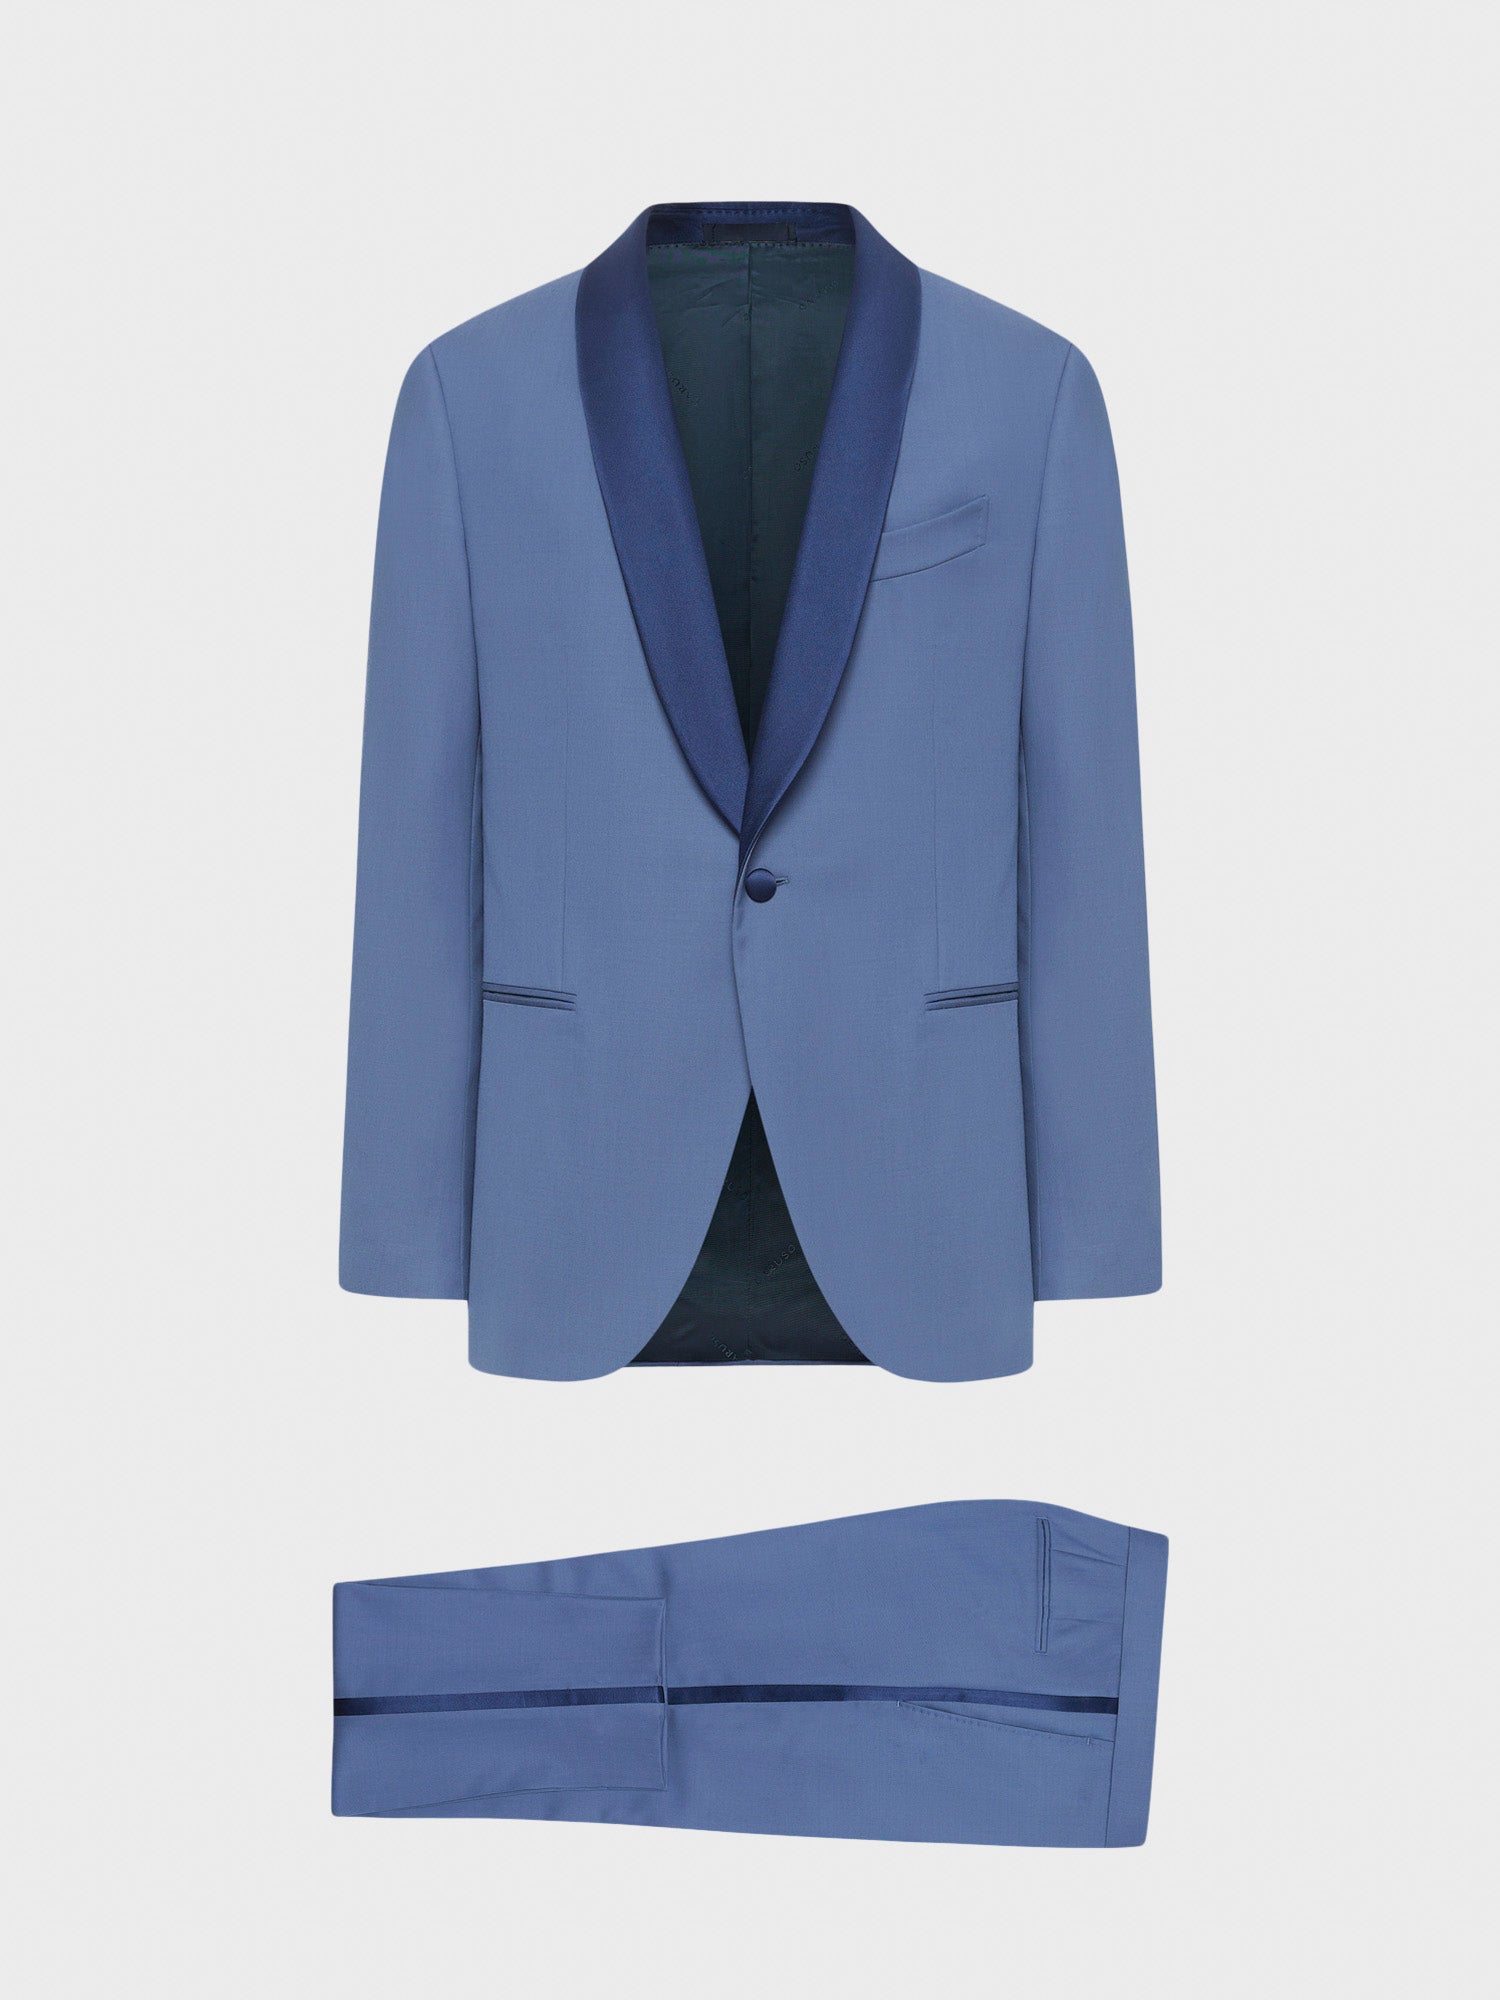 Caruso Menswear Abbigliamento Uomo Abito smoking manon in lana azzurro giacca e pantaloni